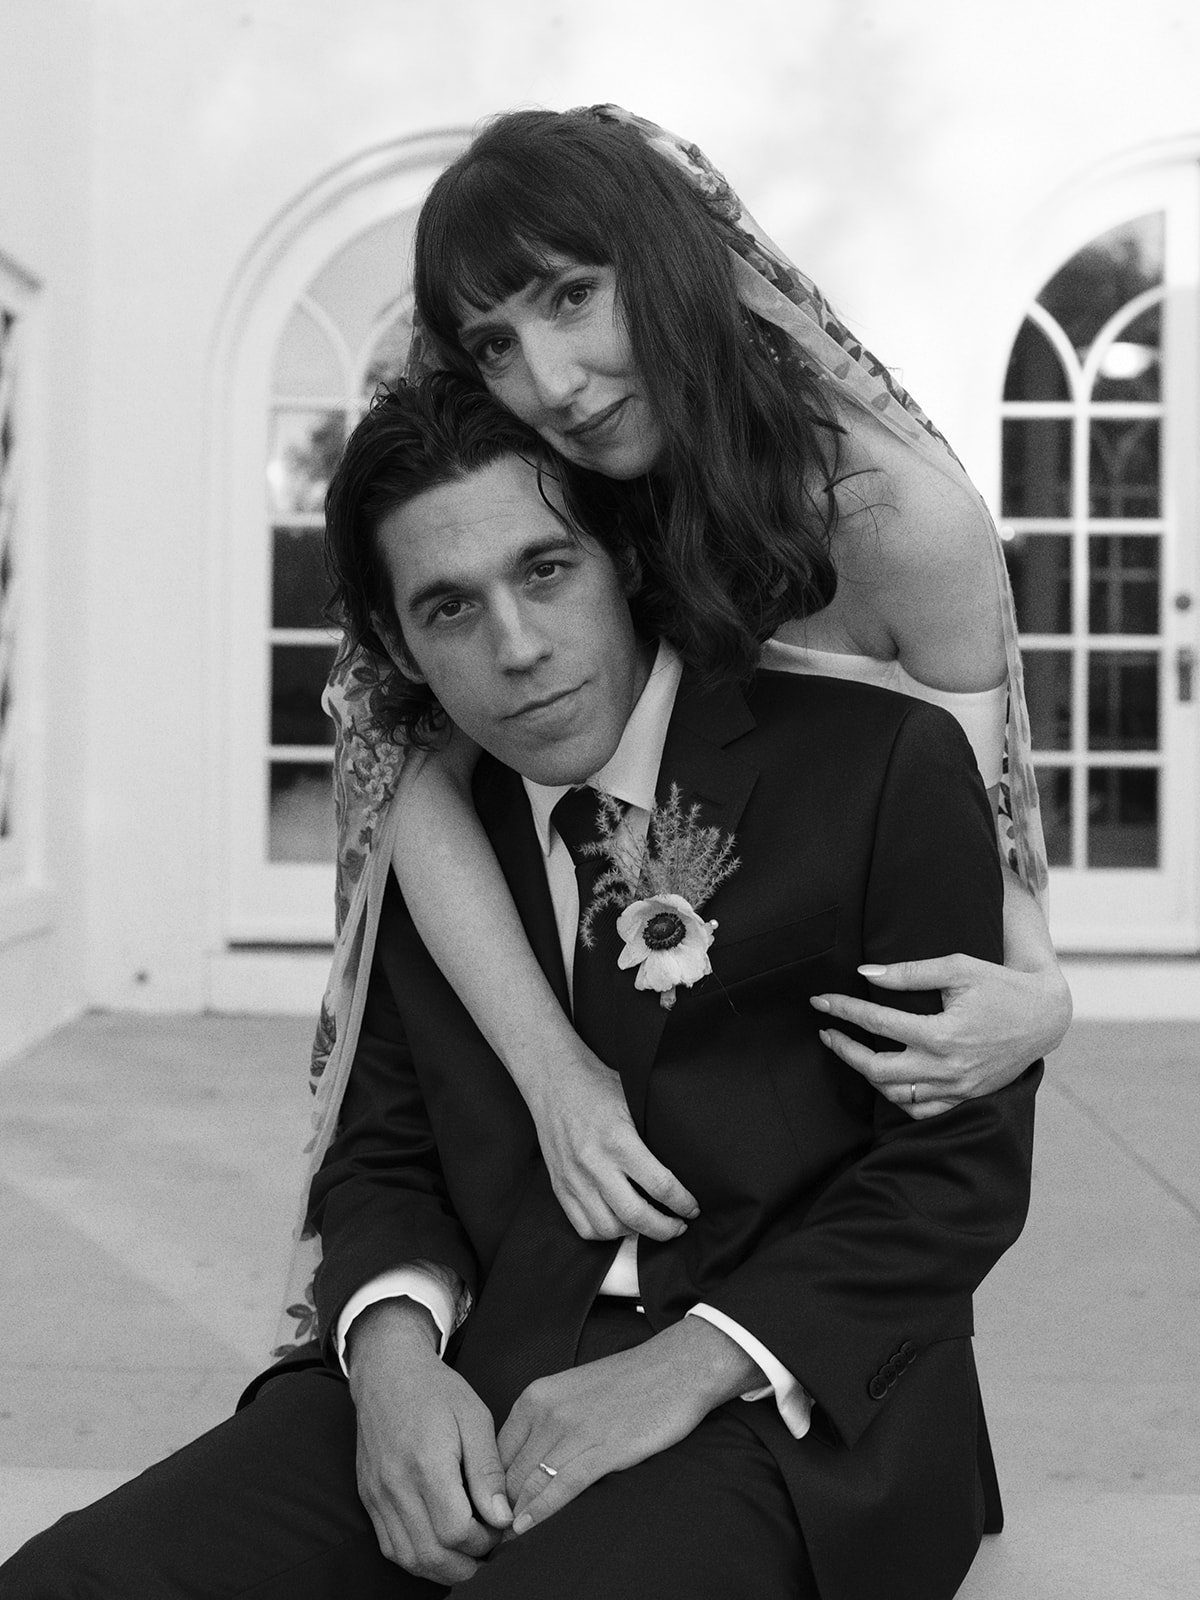 Best-Austin-Wedding-Photographers-Elopement-Film-35mm-Asheville-Santa-Barbara-Laguna-Gloria-61.jpg